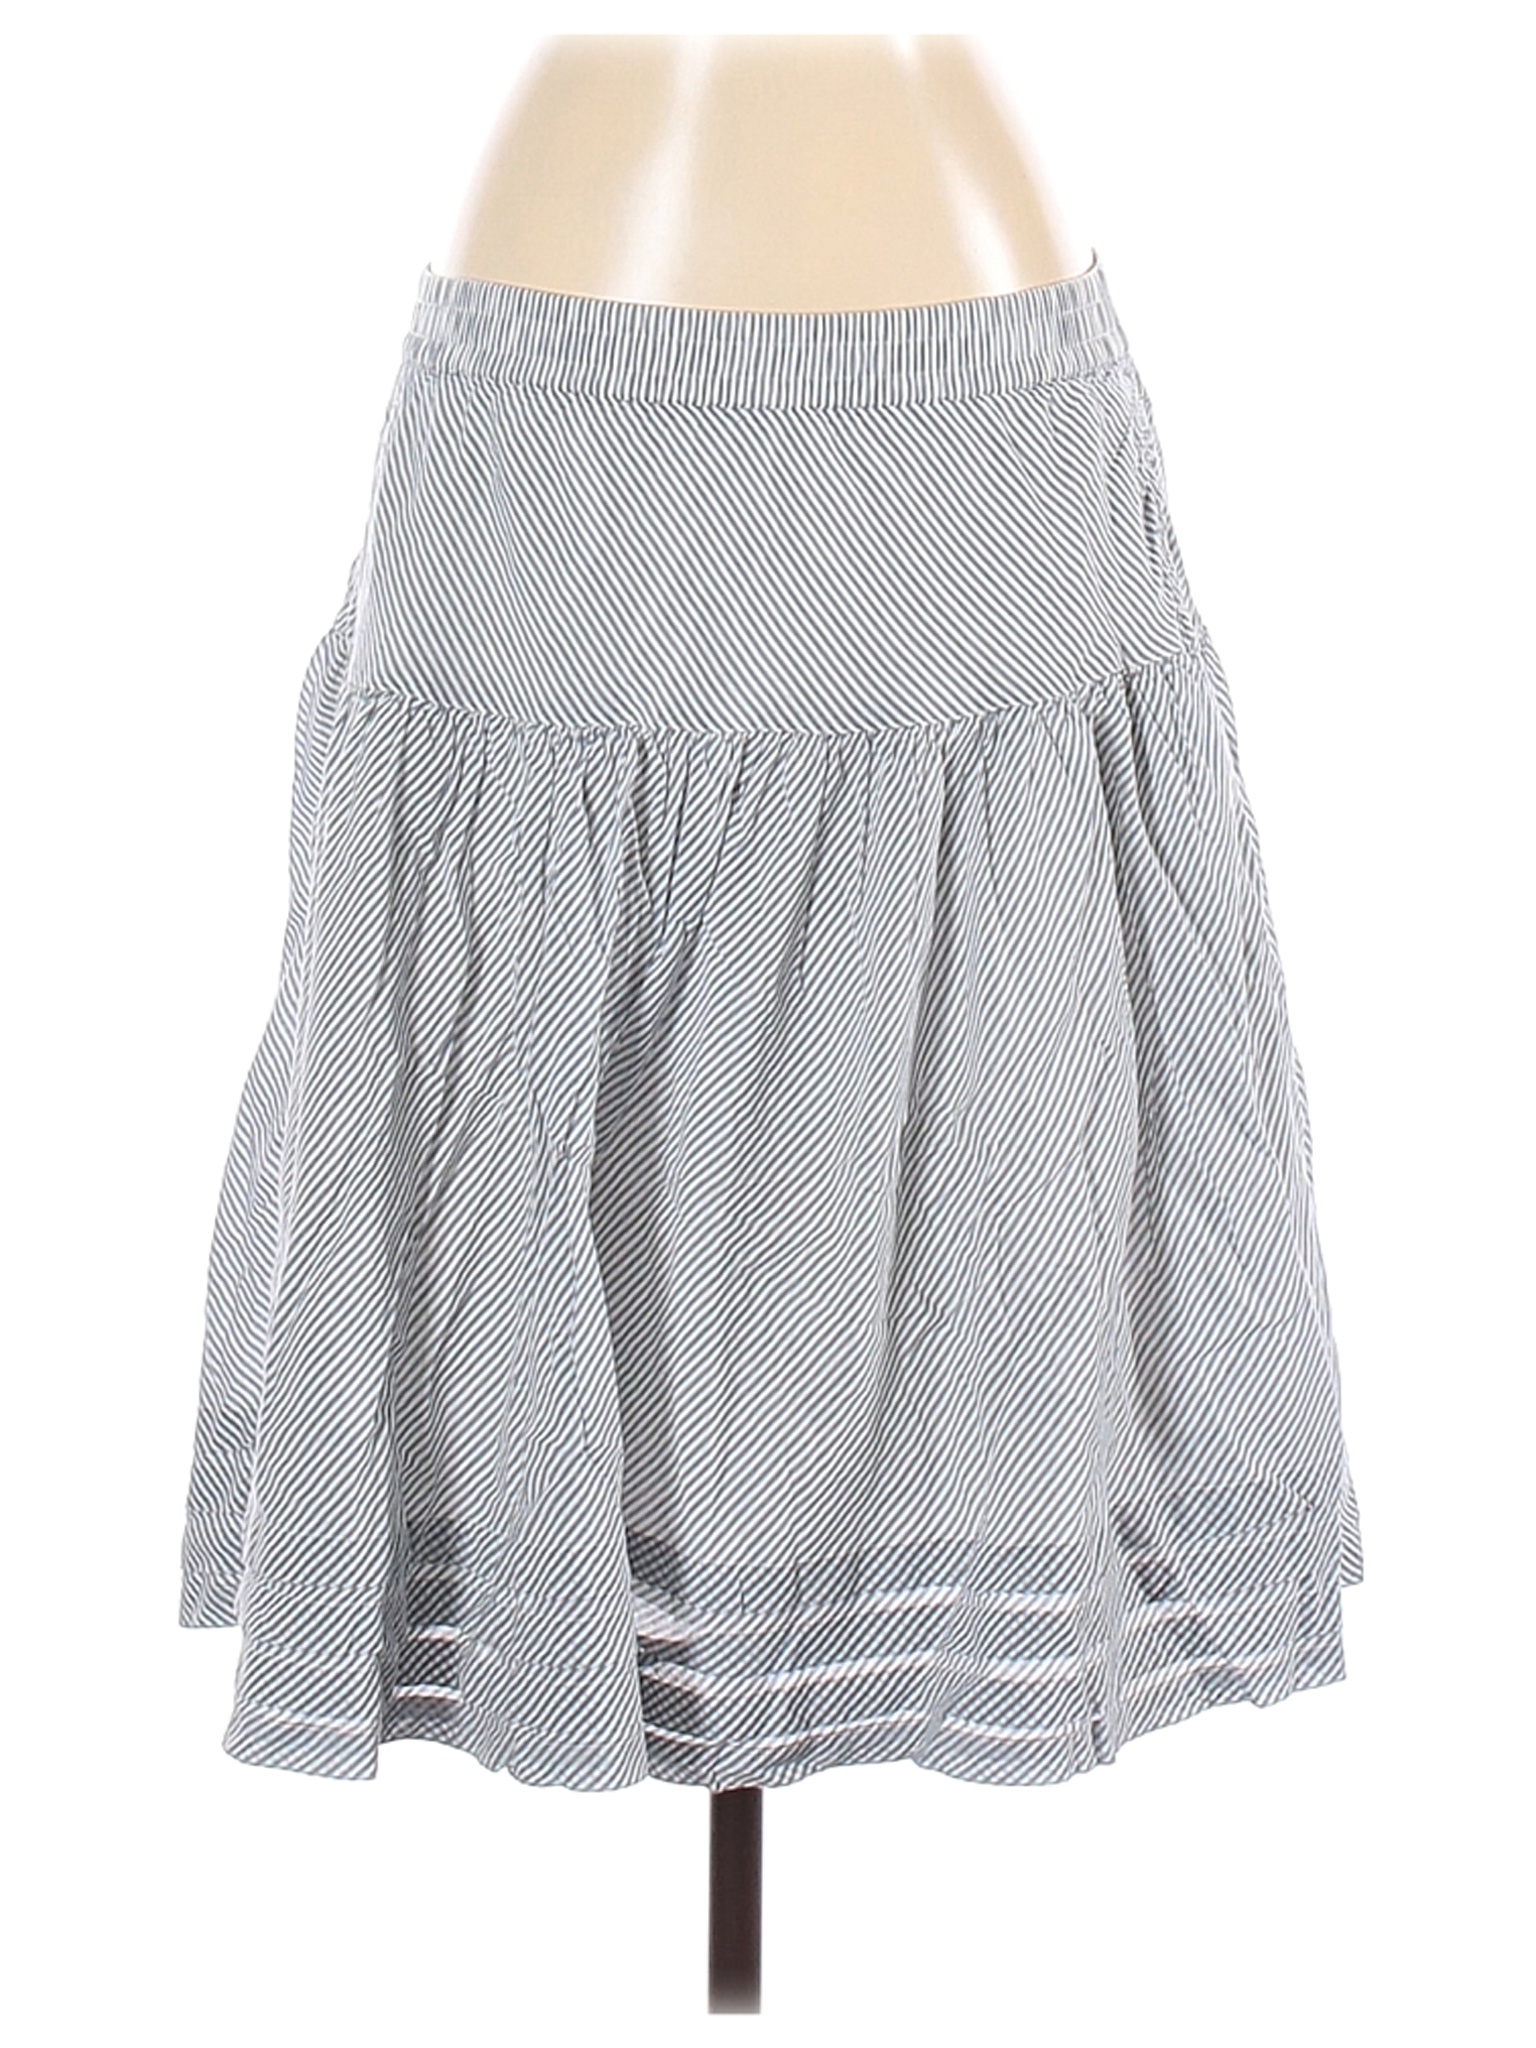 Gap Women White Casual Skirt S | eBay